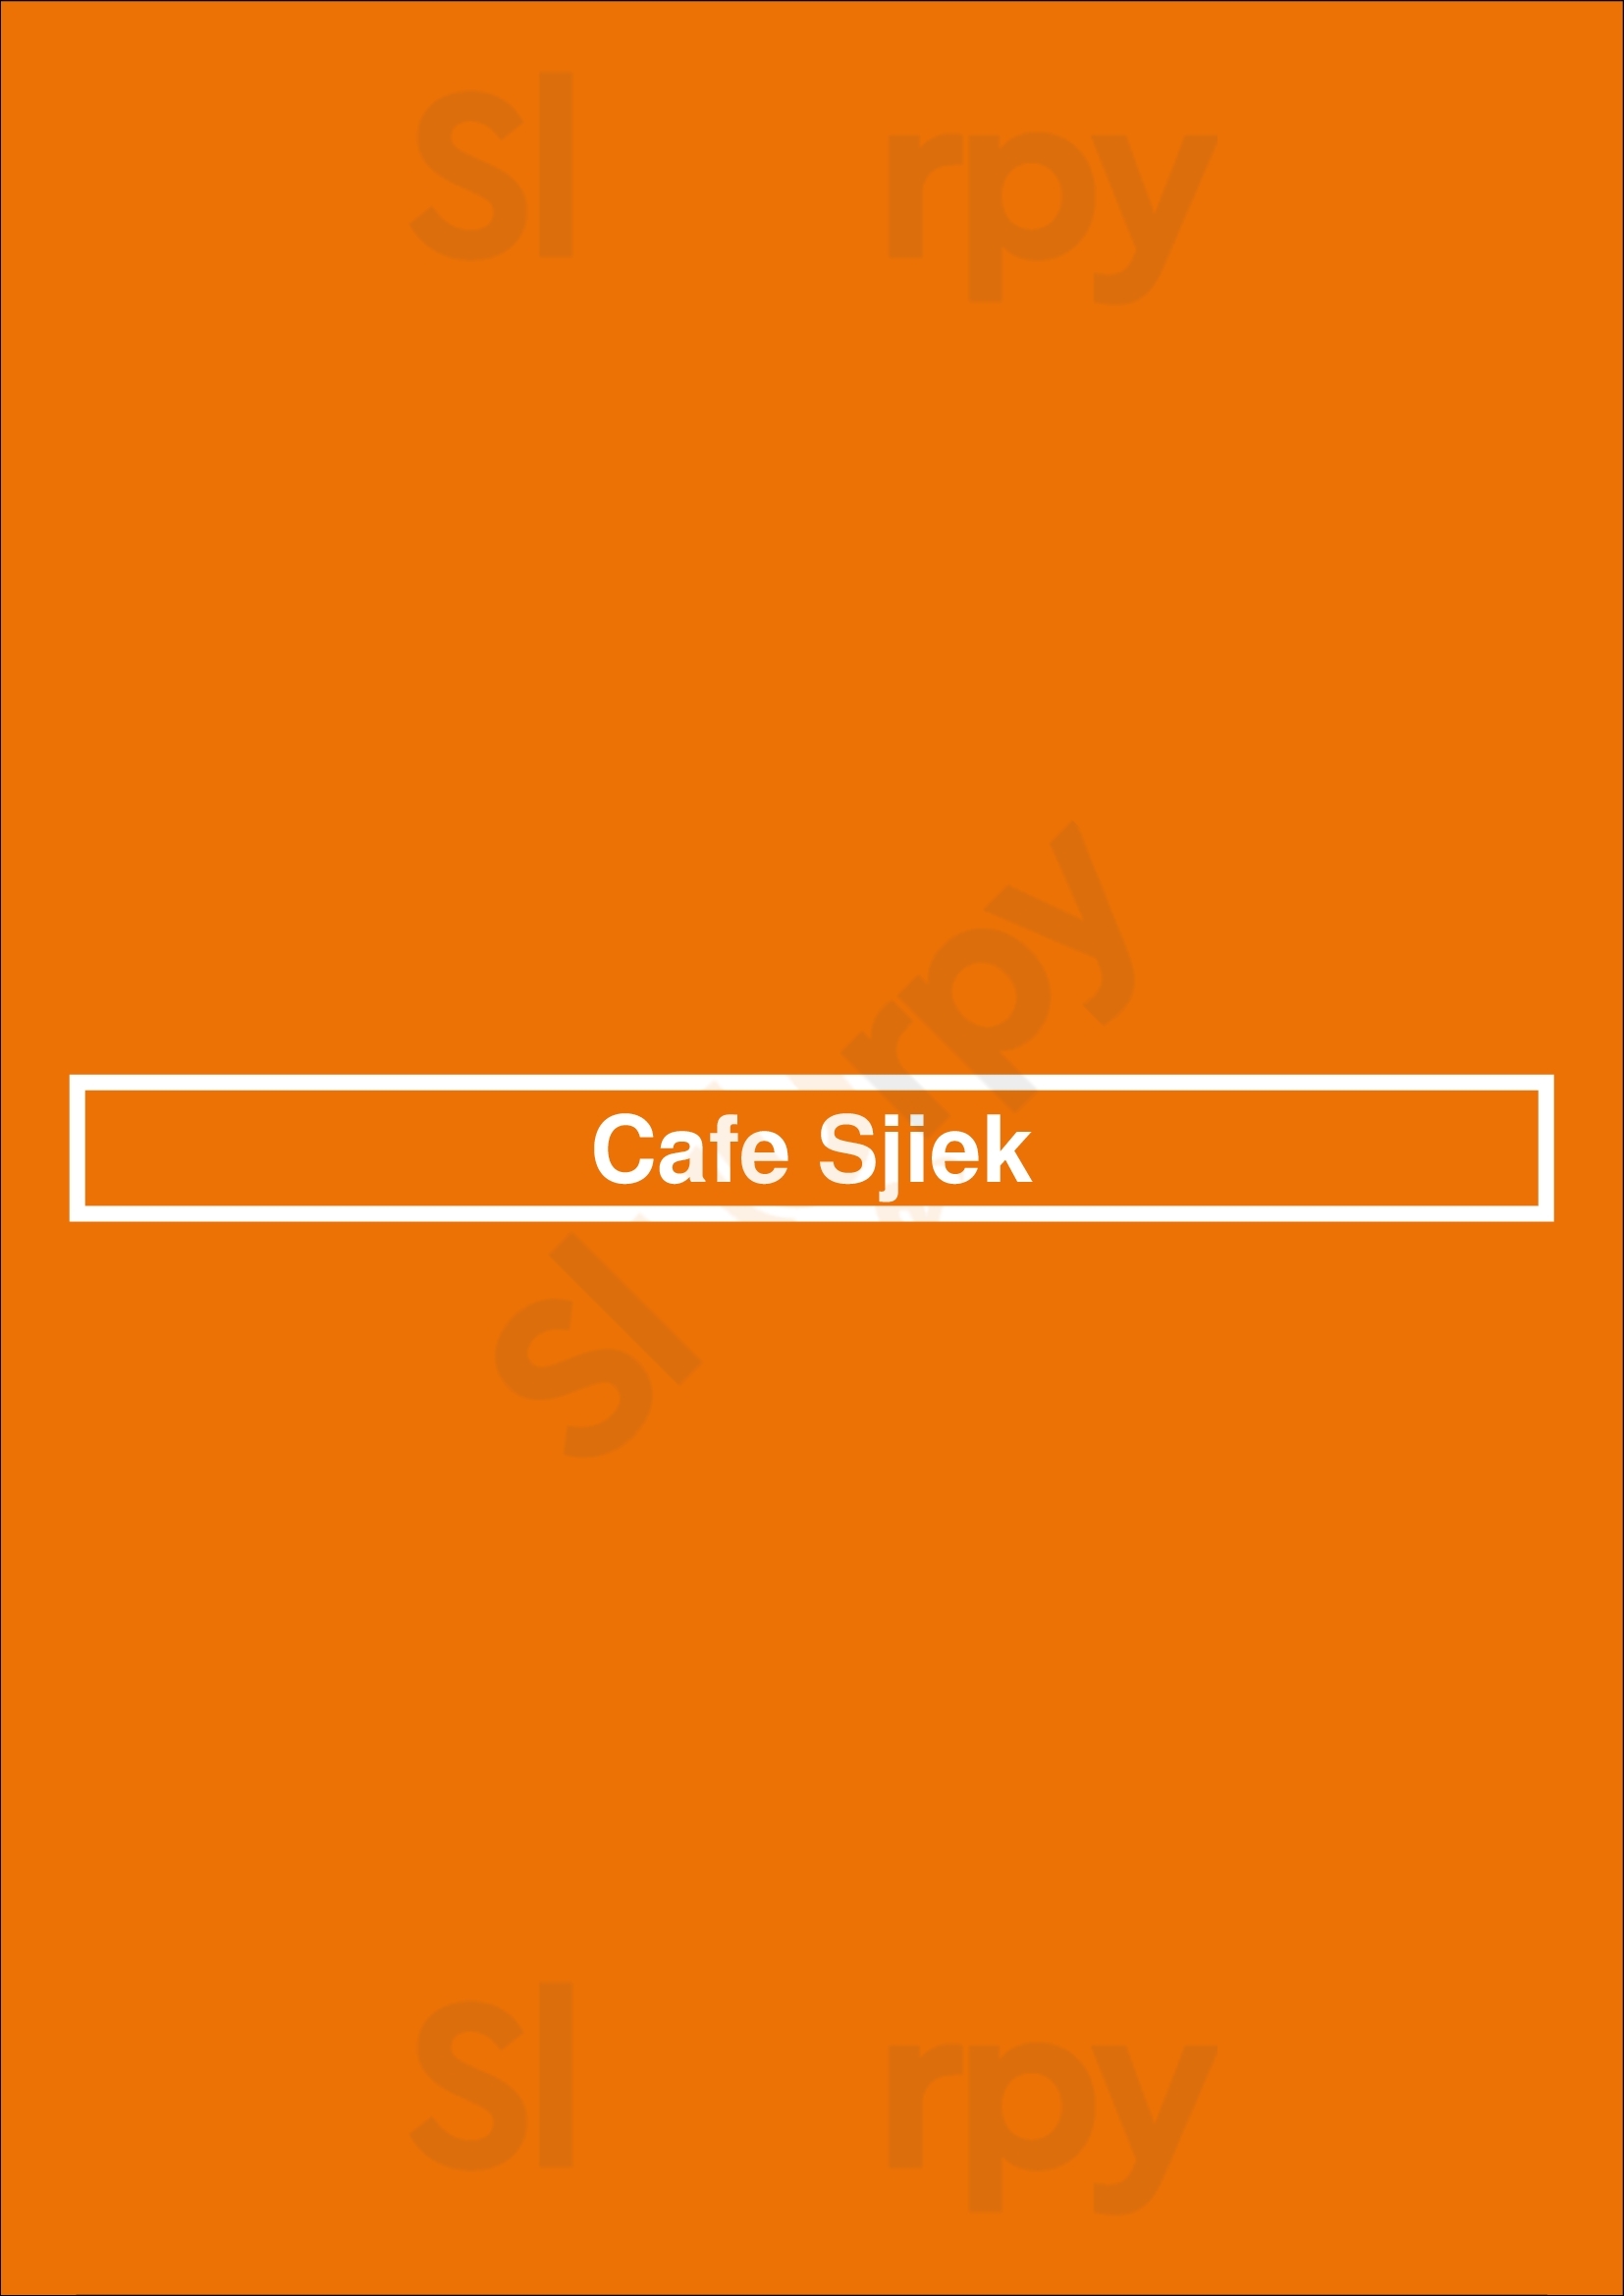 Cafe Sjiek Schiedam Menu - 1